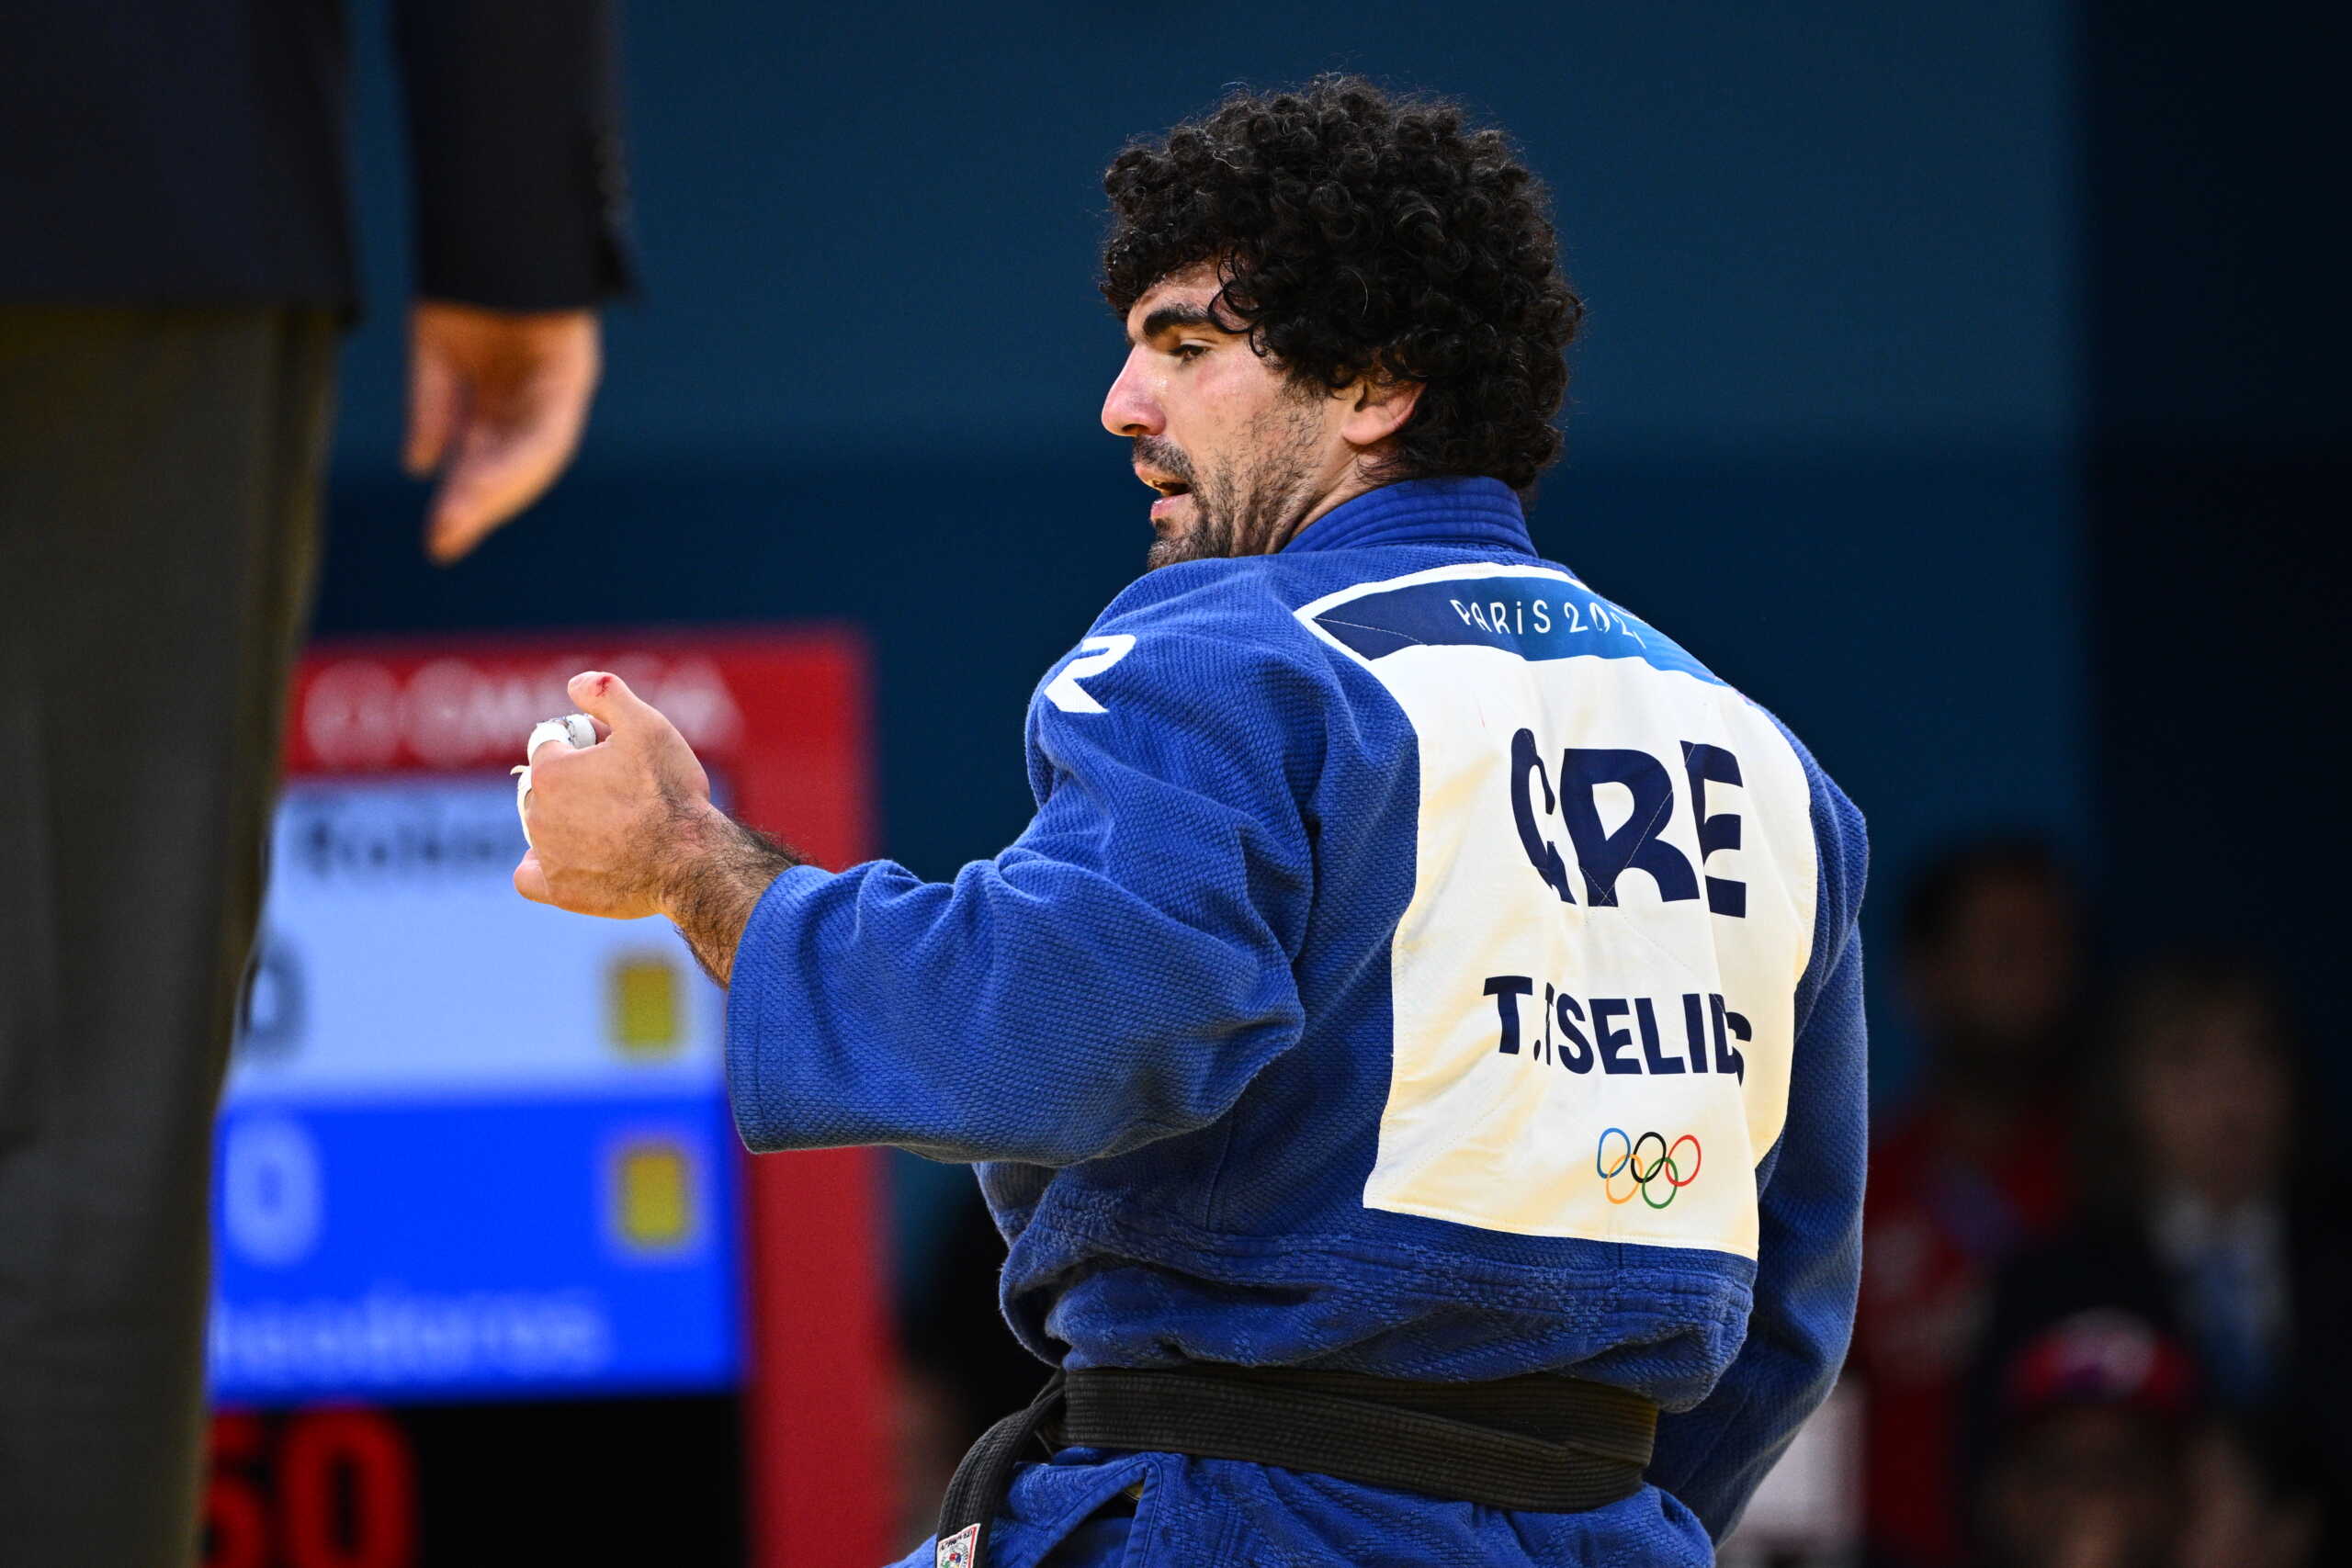 Ο Θοδωρής Τσελίδης προκρίθηκε στον δεύτερο γύρο των 90 κιλών τζούντο στους Ολυμπιακούς Αγώνες